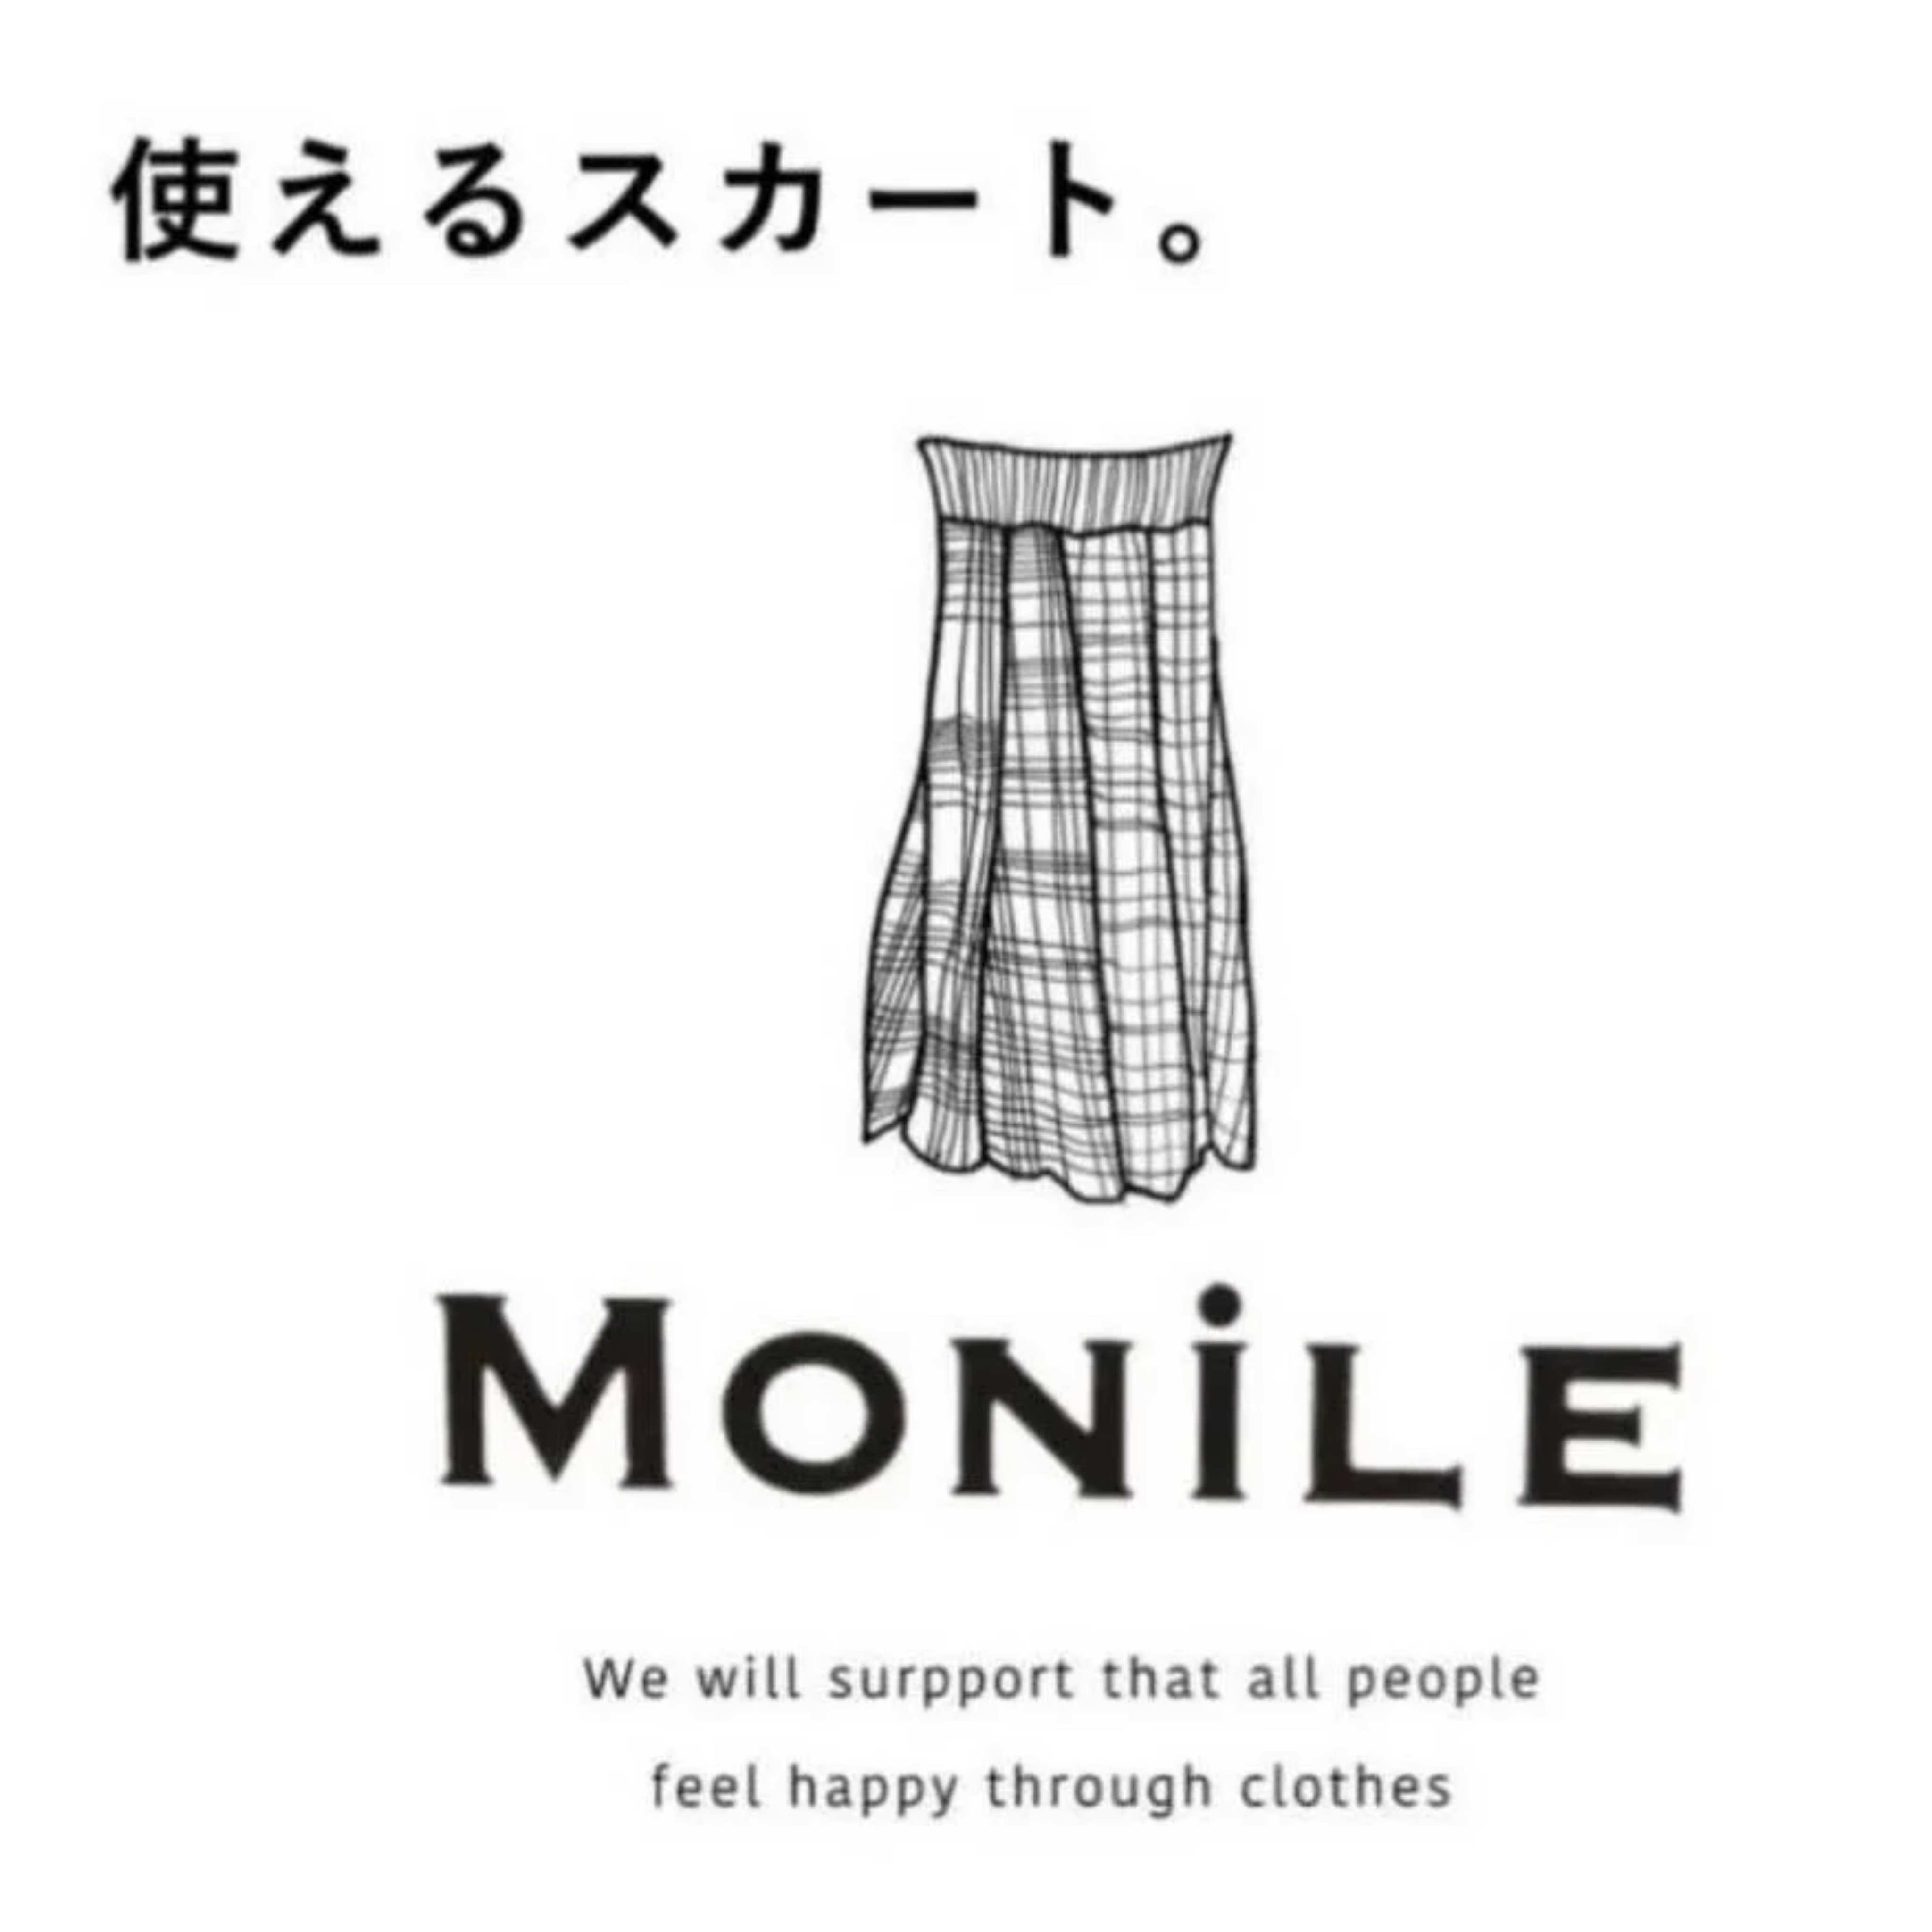 プリーツ MONILE 2段プリーツ パンツ 黒 モニーレ 新品 ガウチョパ